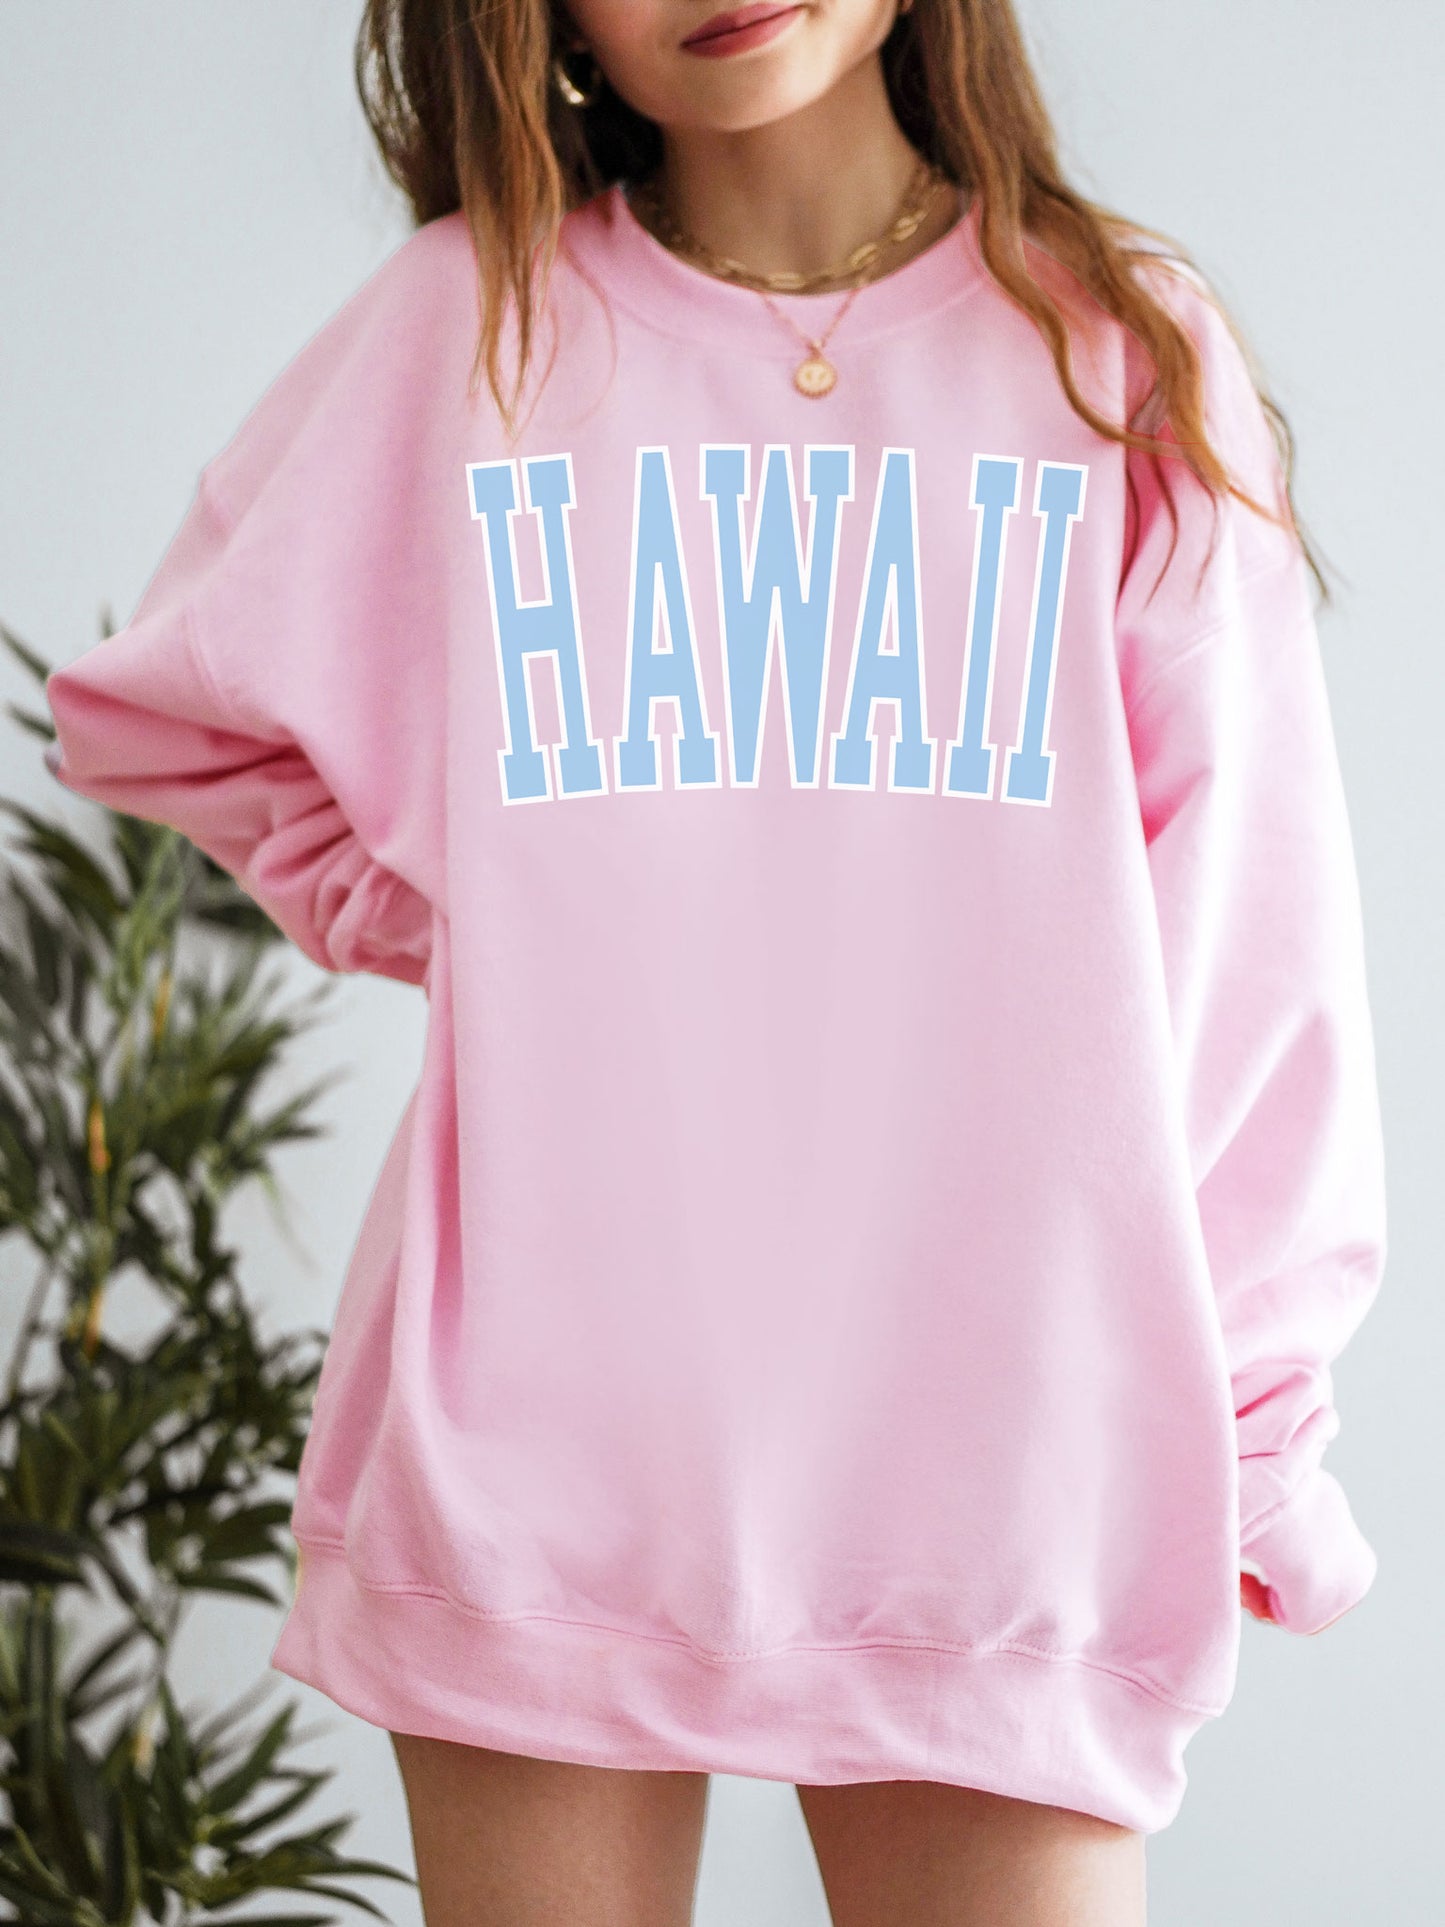 Hawaii Sweatshirt - Blue Ink